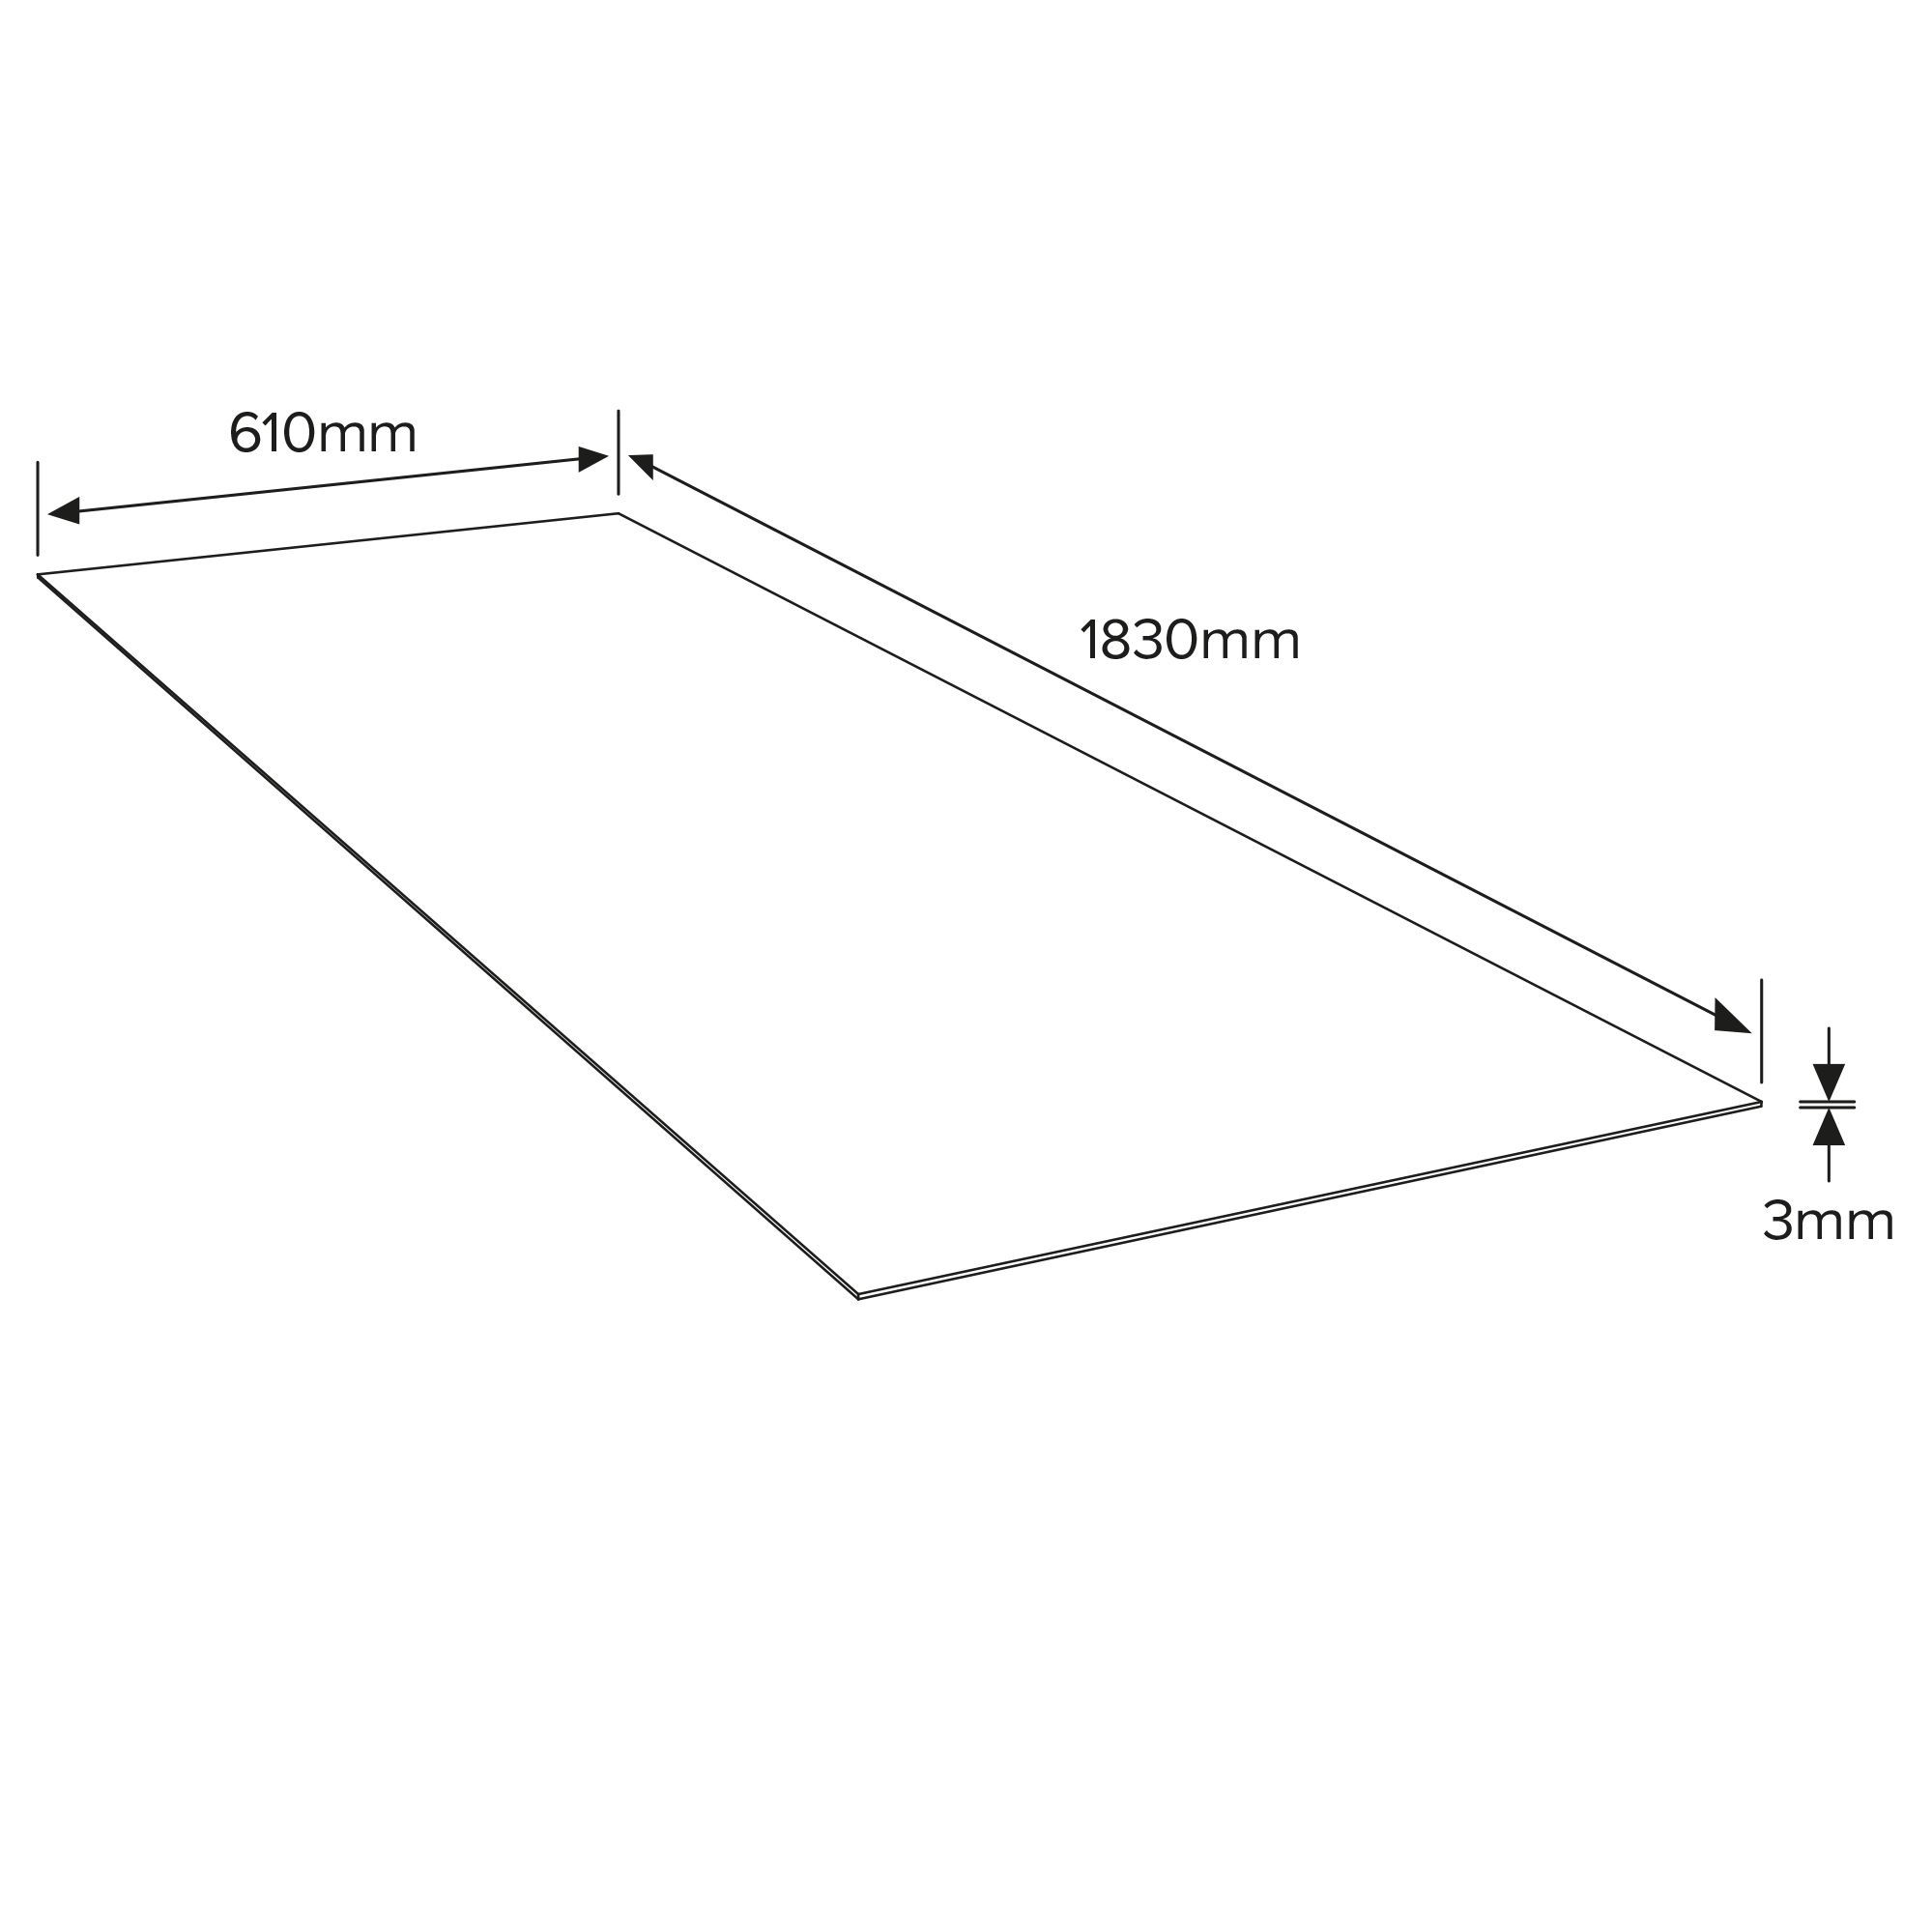 White Hardboard (L)1.83m (W)0.61m (T)3mm 3200g